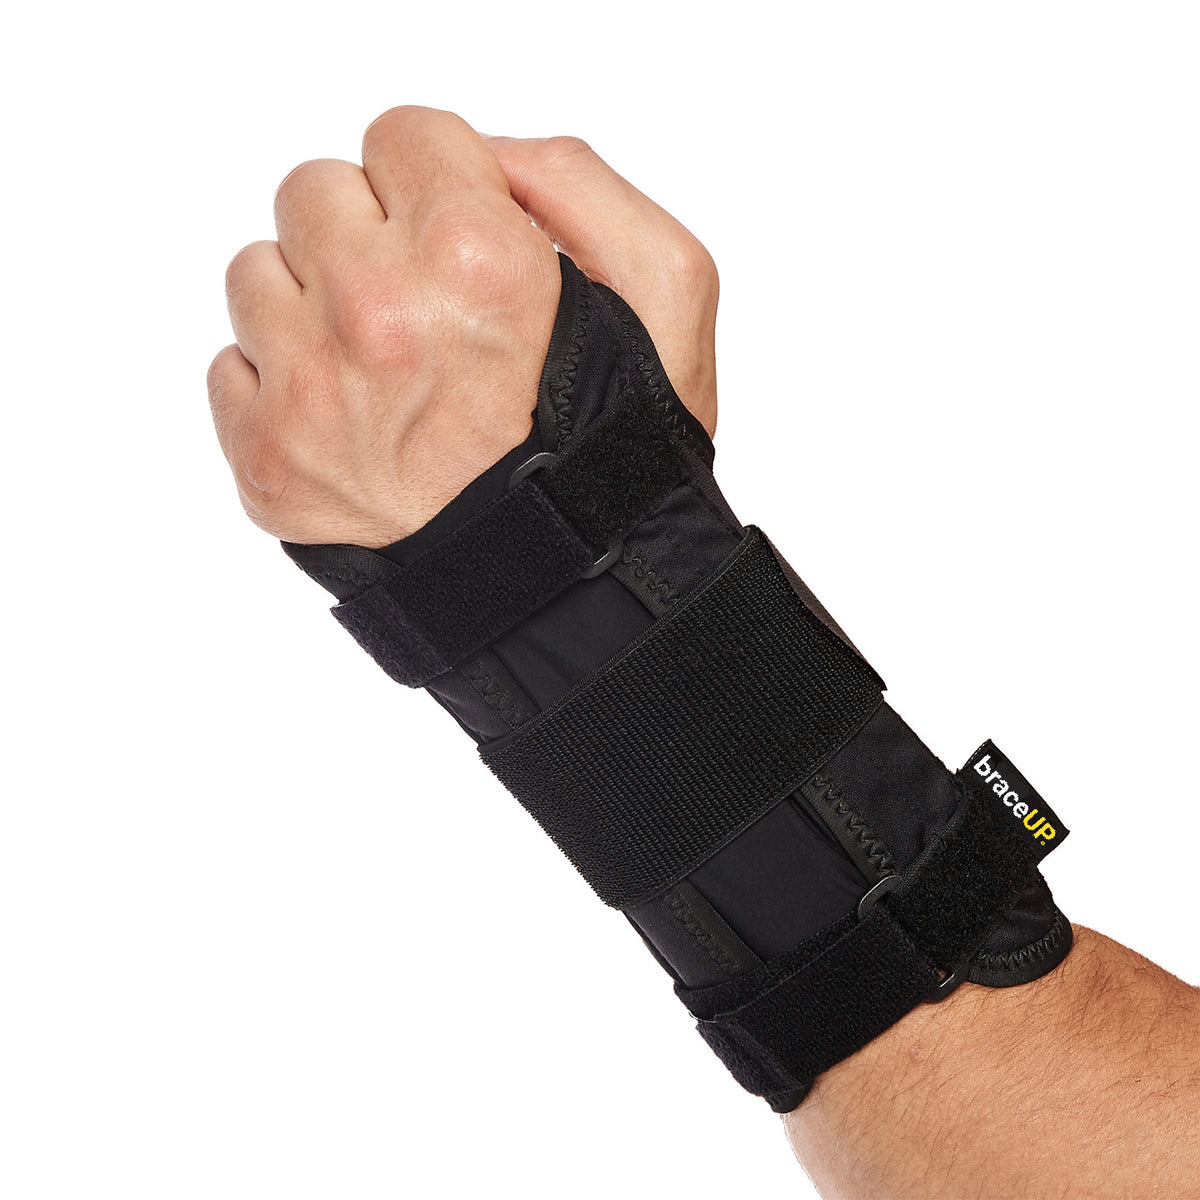 ORTHOLIFE Reversible Universal Wrist Brace